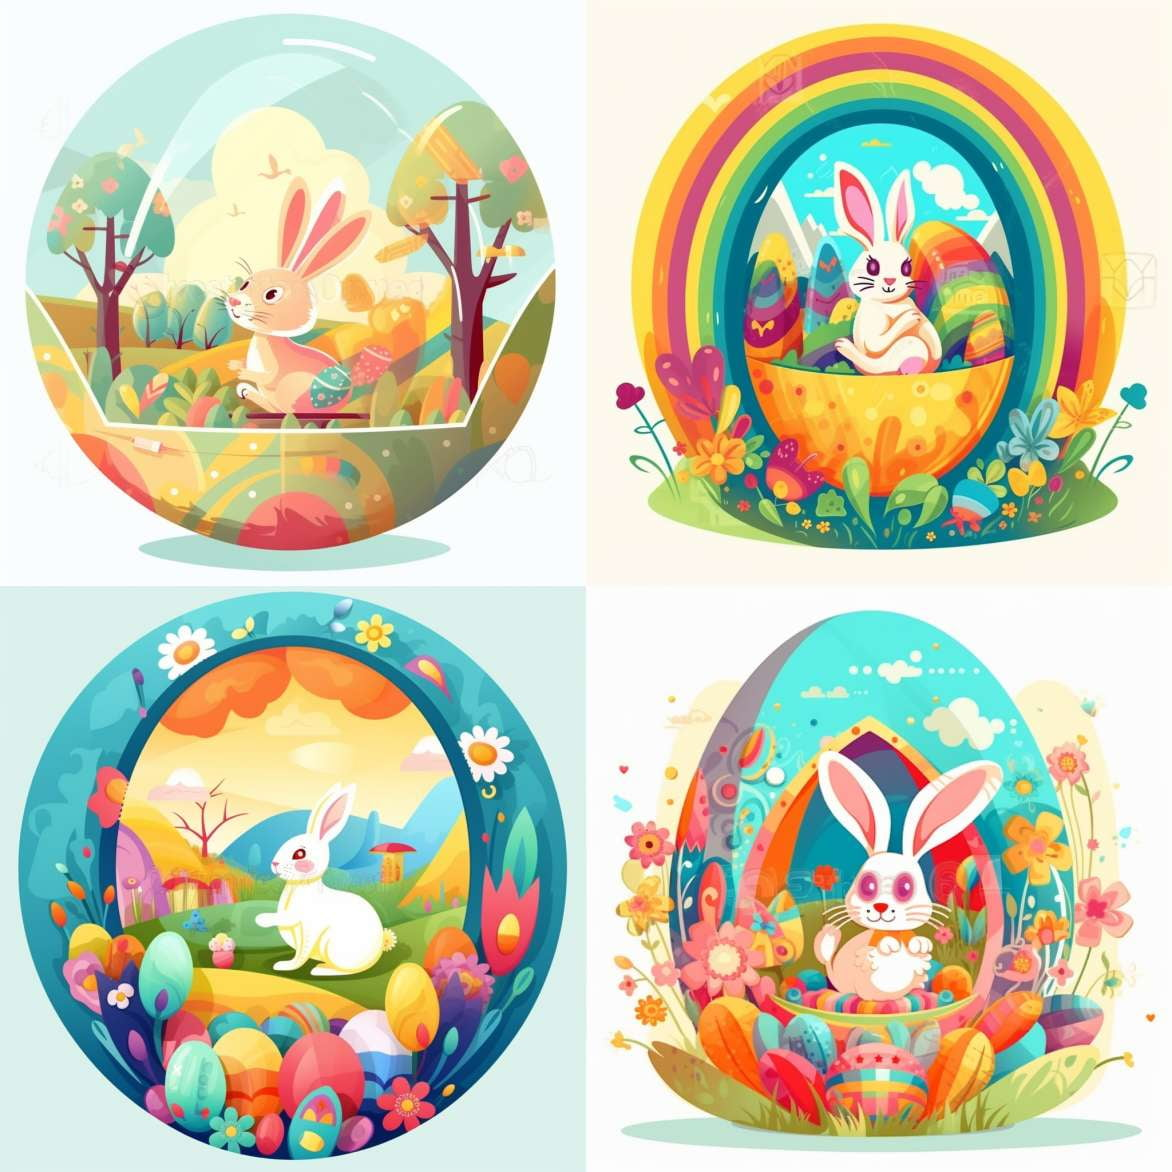 Cute Easter Bunny Illustrations - Socialdraft